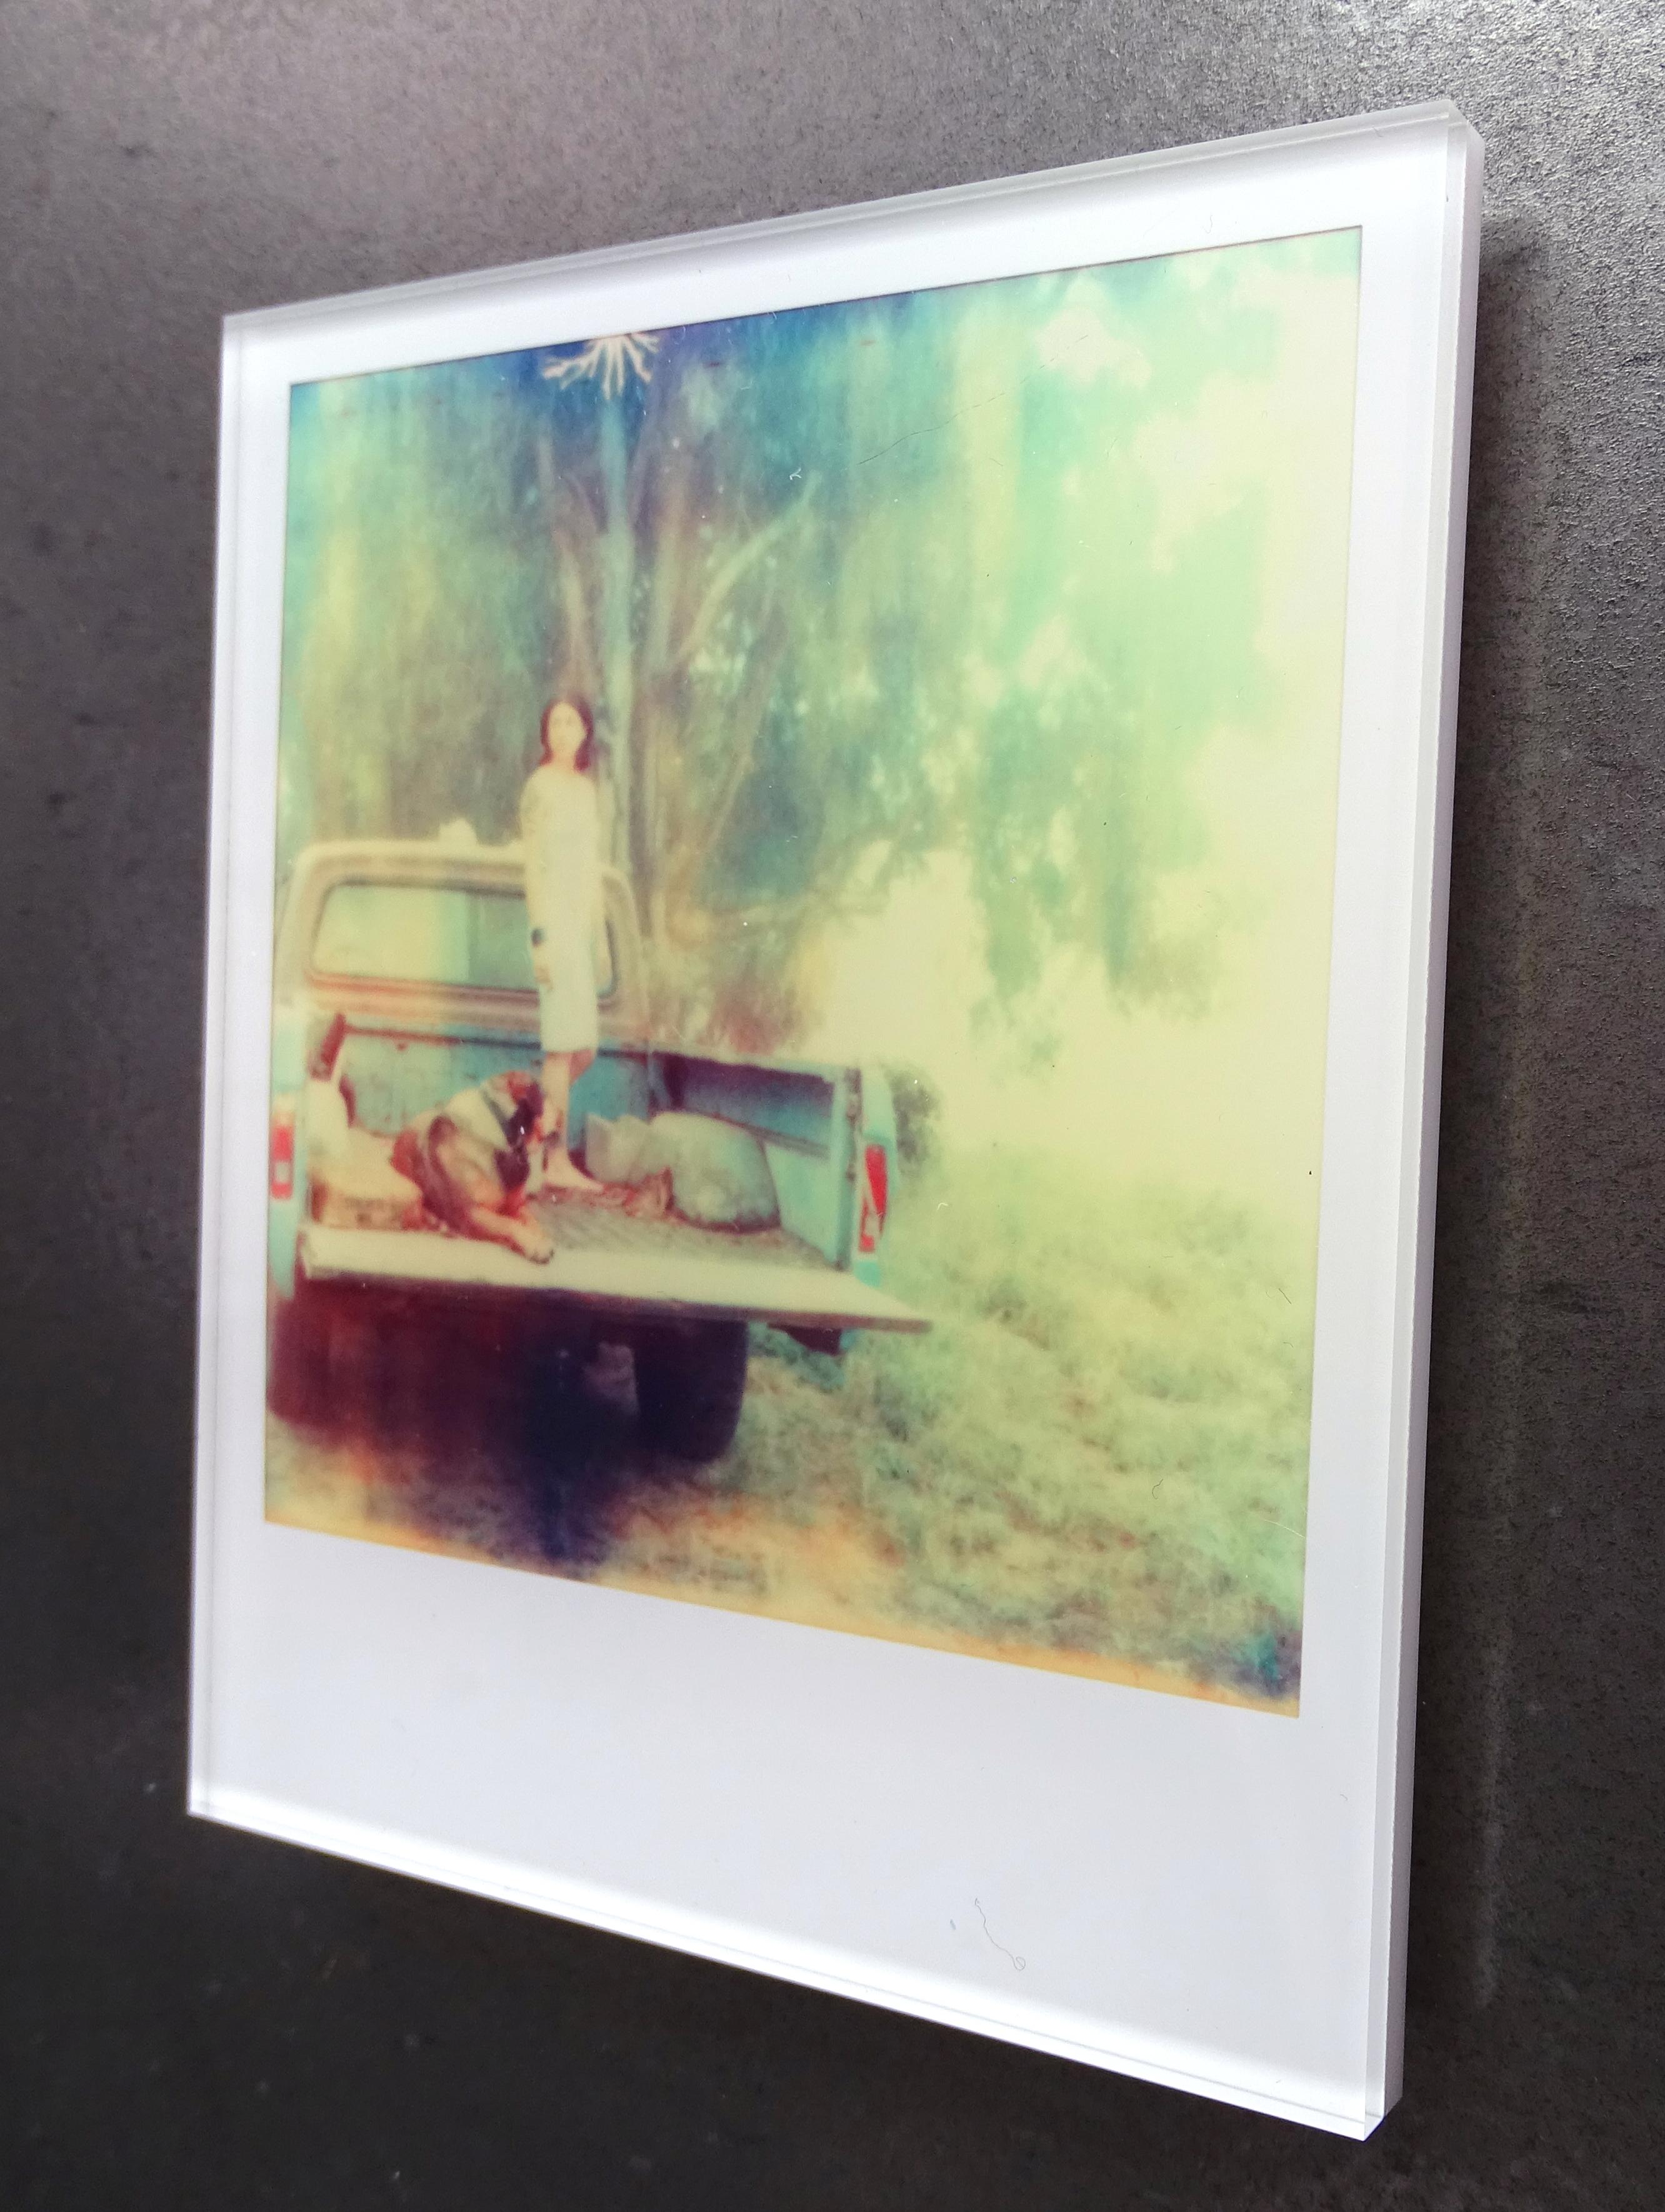 Stefanie Schneider Minis - Saigon - based on a Polaroid 1